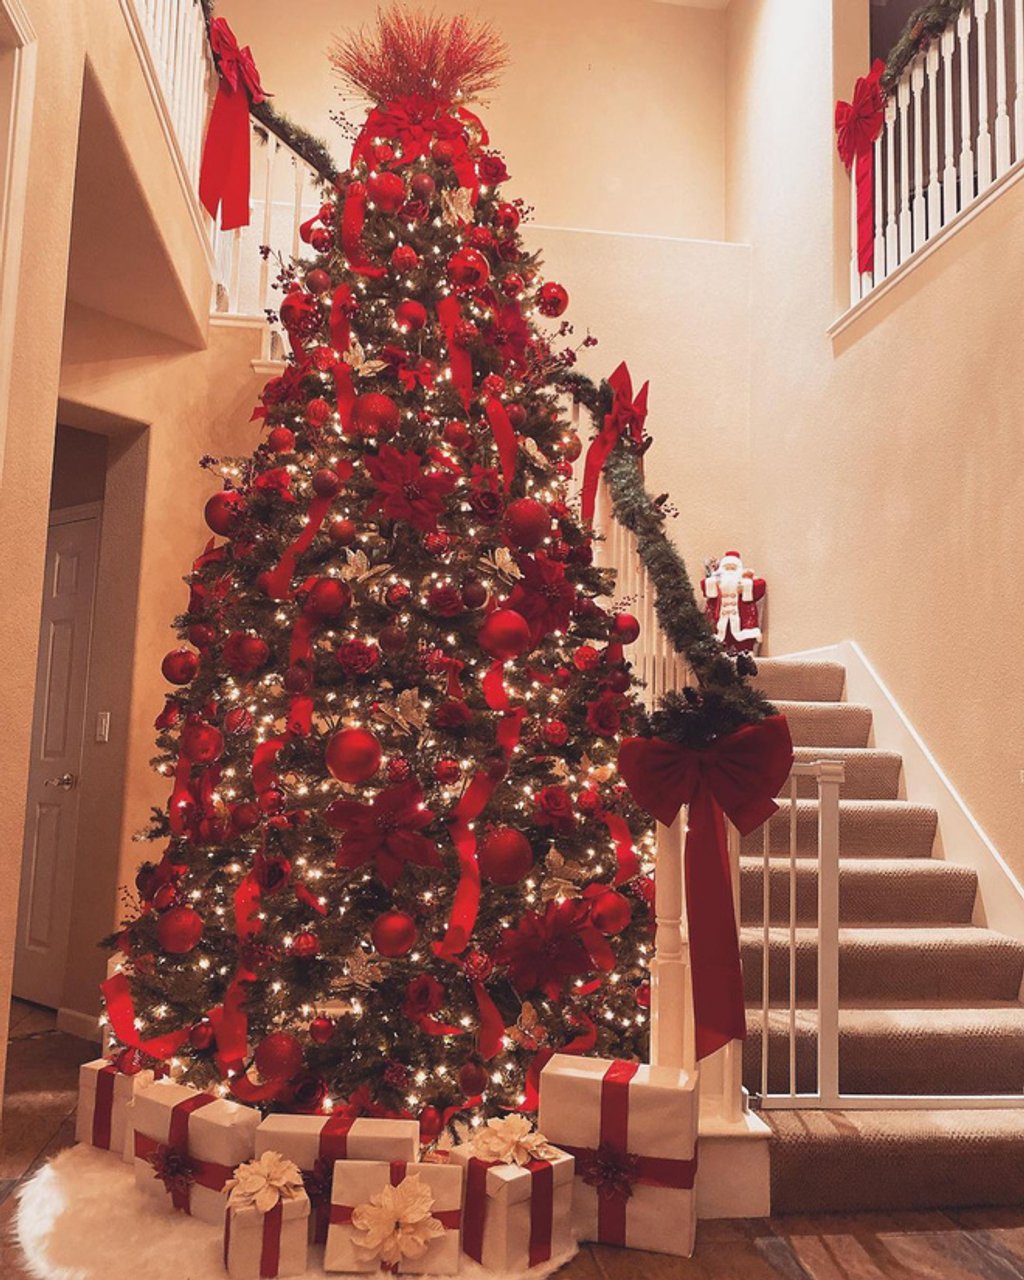 Bàn ăn ấm cúng cùng cây thông đỏ rực trong biệt thự nhà Hoa hậu Phạm Hương tại Mỹ trong mùa Giáng sinh 2020.